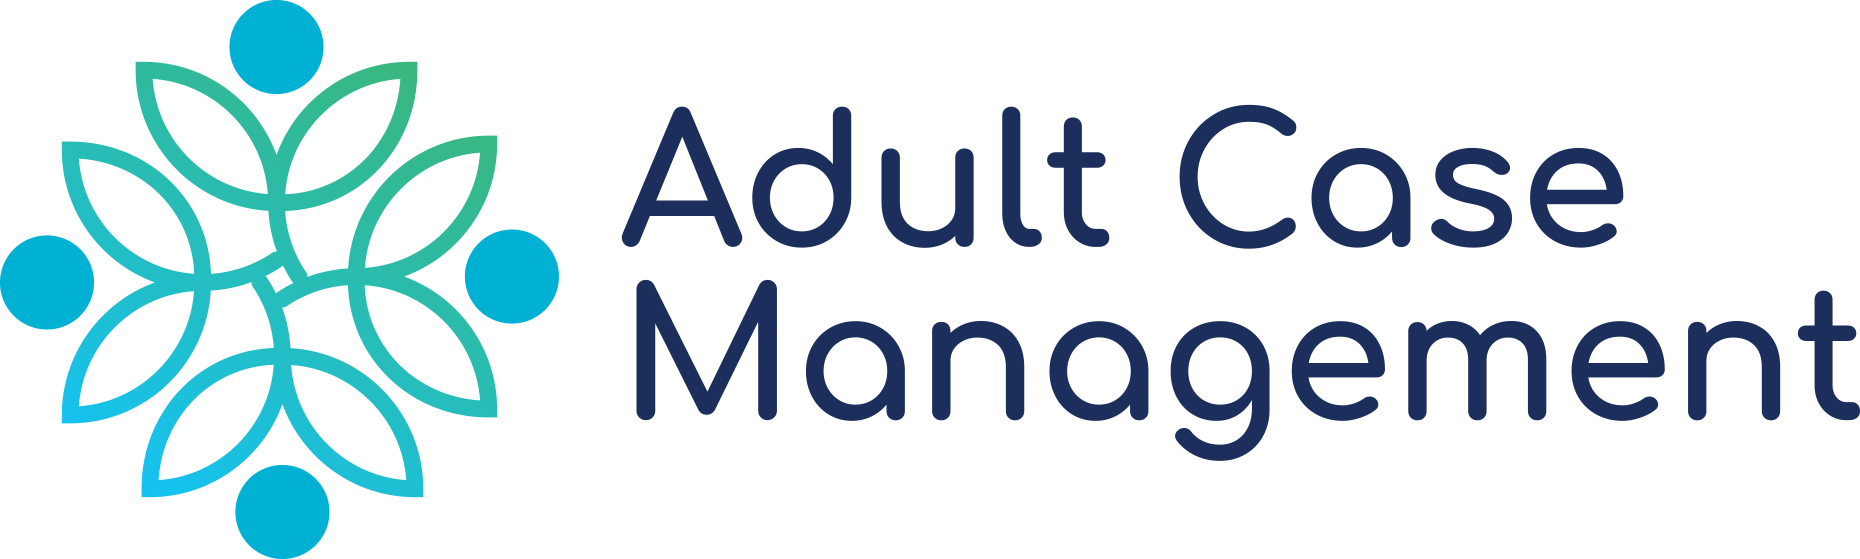 Adult Case Management